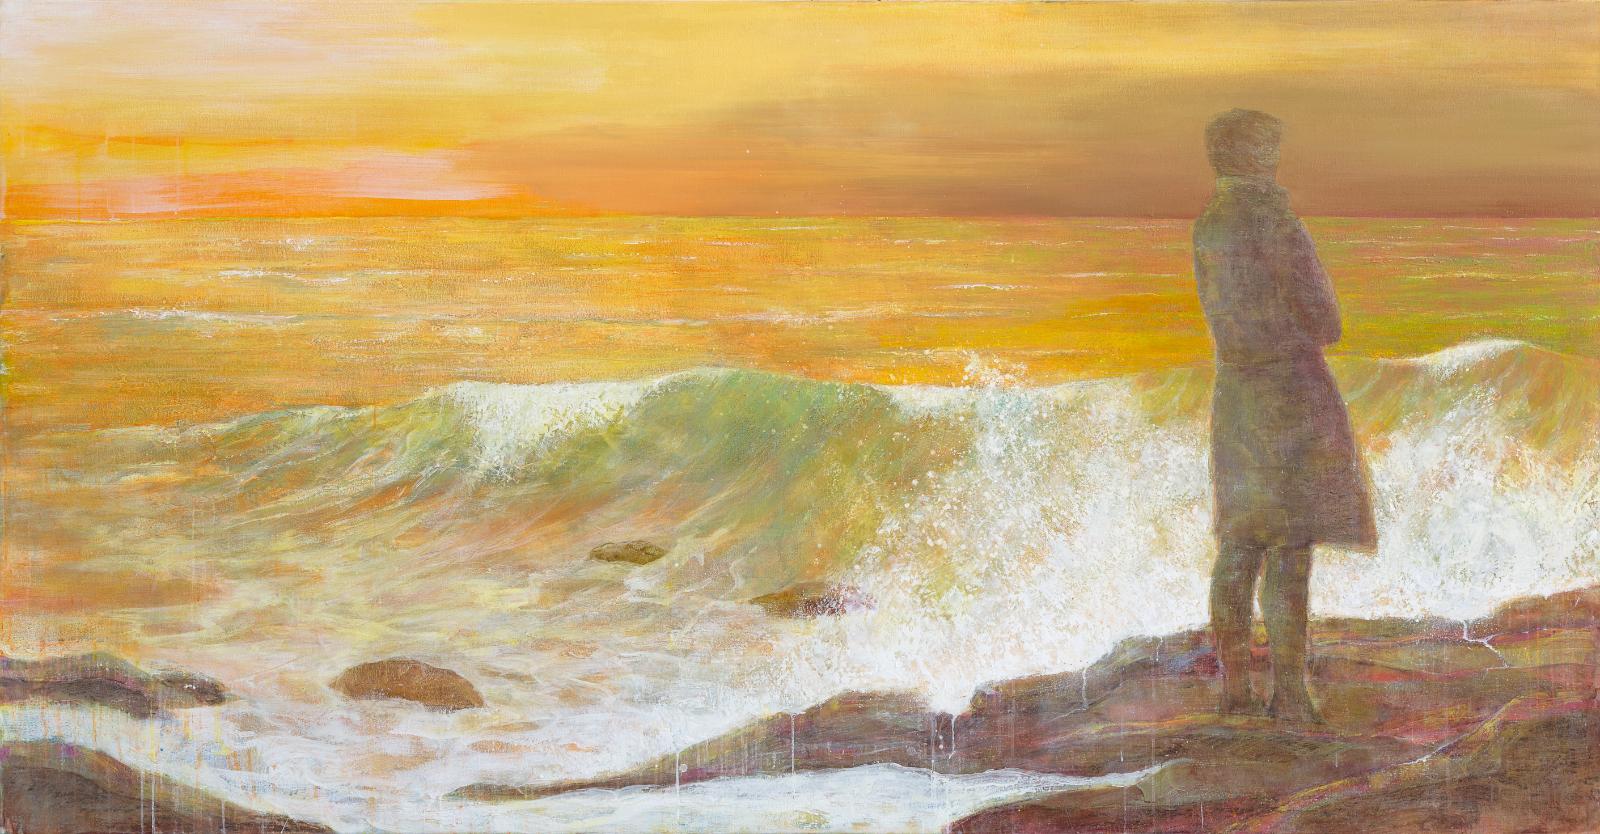 Kathrin Rank, Gezeiten III, 2016, Öl auf Leinwand, 125 x 240 cm, Preis auf Anfrage, SÜDWESTGALERIE